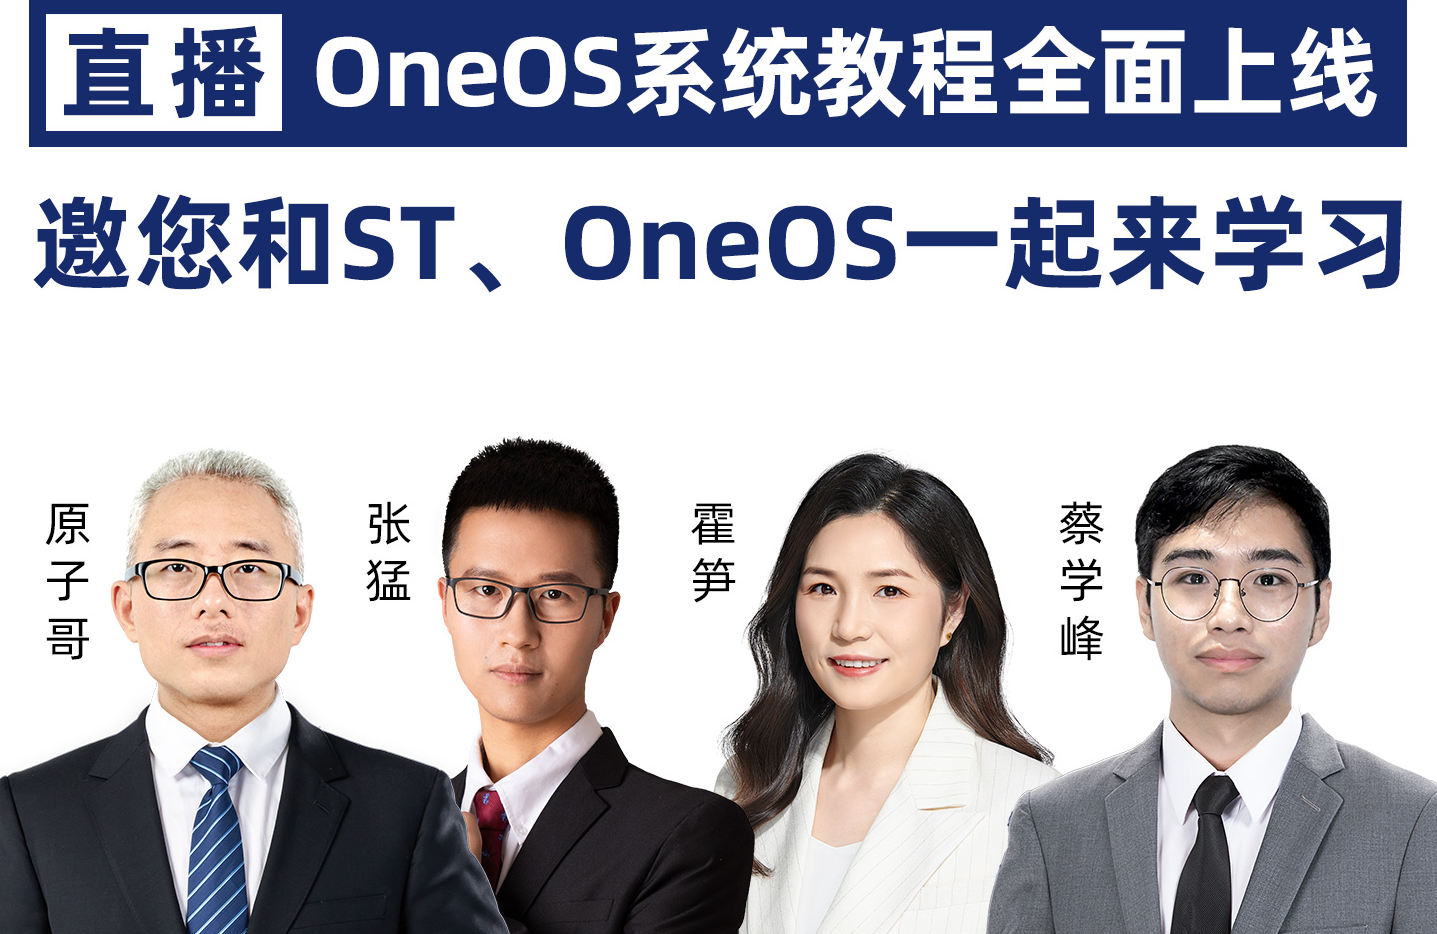 【直播来袭】OneOS系统教程全面上线，邀您和ST、OneOS<b>一起来</b>学习啦！